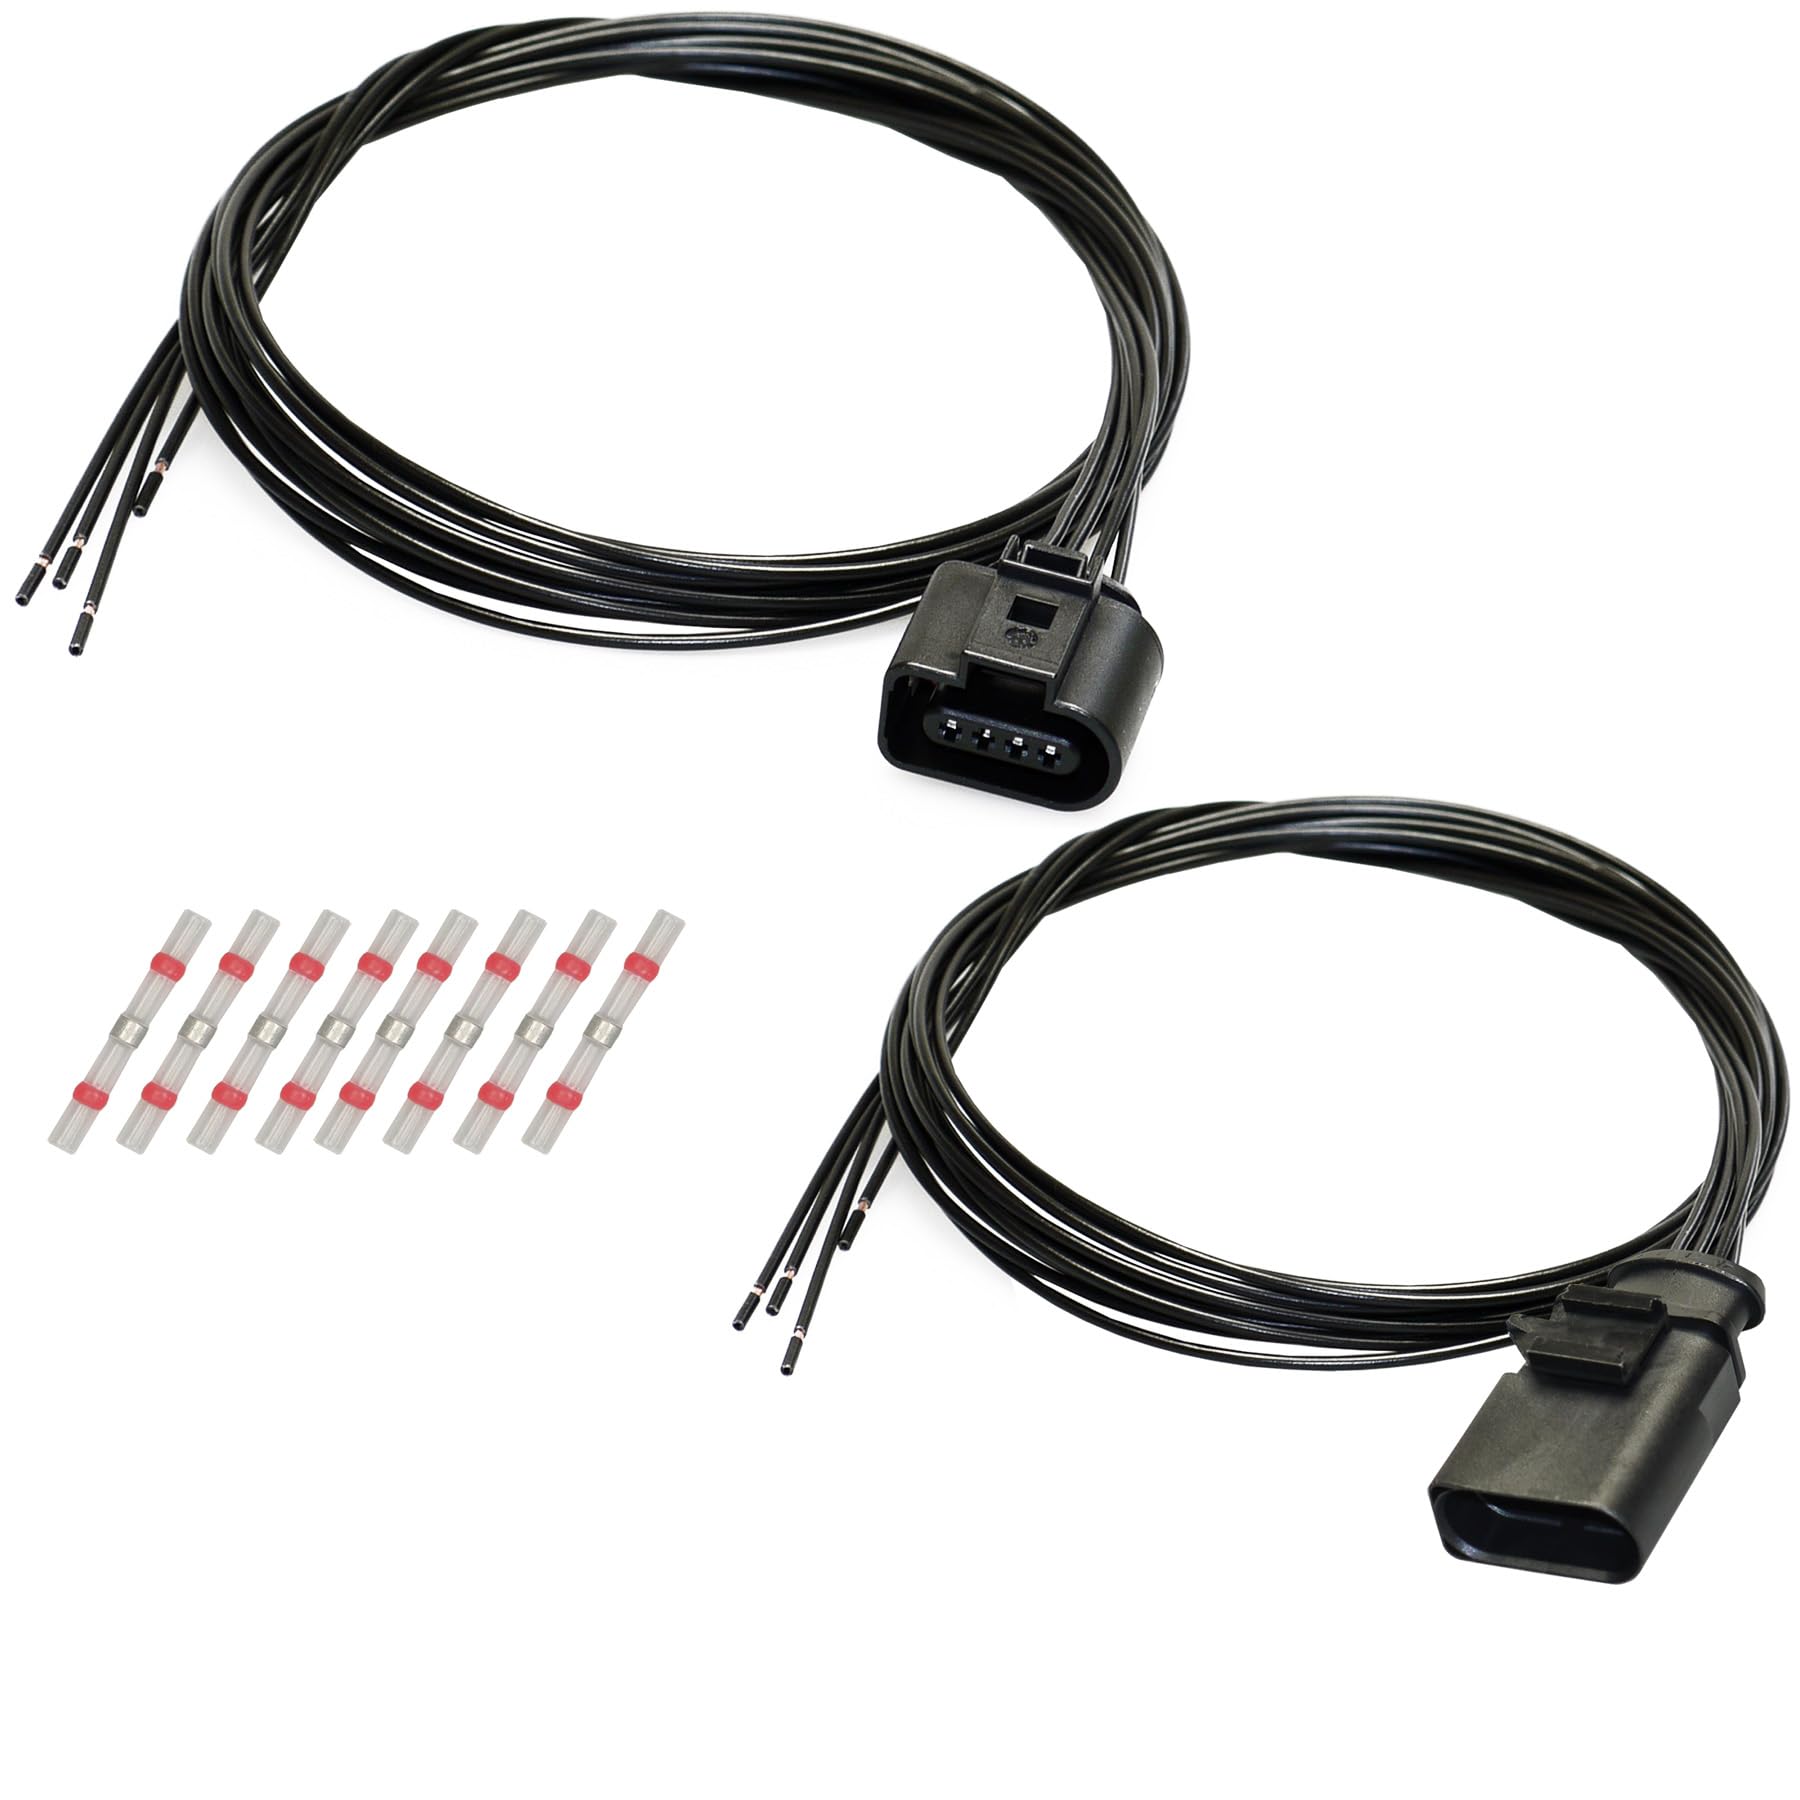 Stecker Set kompatibel zu VW Audi 1K0973804 / 1J0973704 Reparatursatz 4-pol Kabelsatz Stift/Buchse von Cable Solution